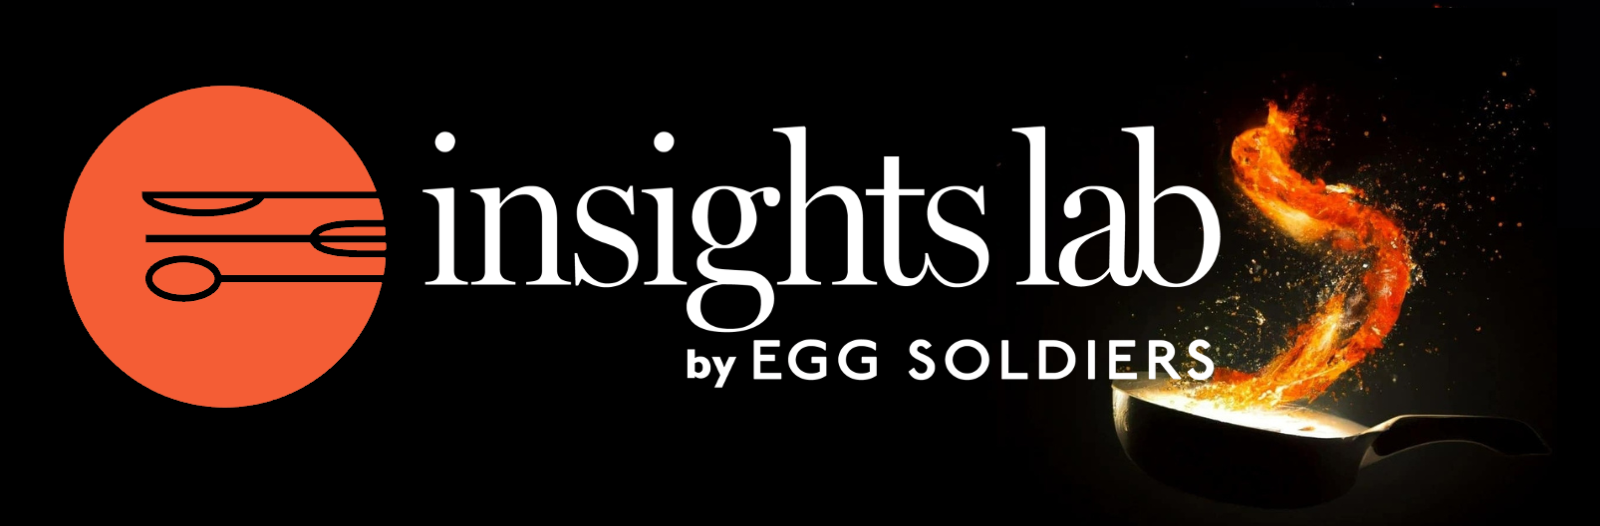 insightslab